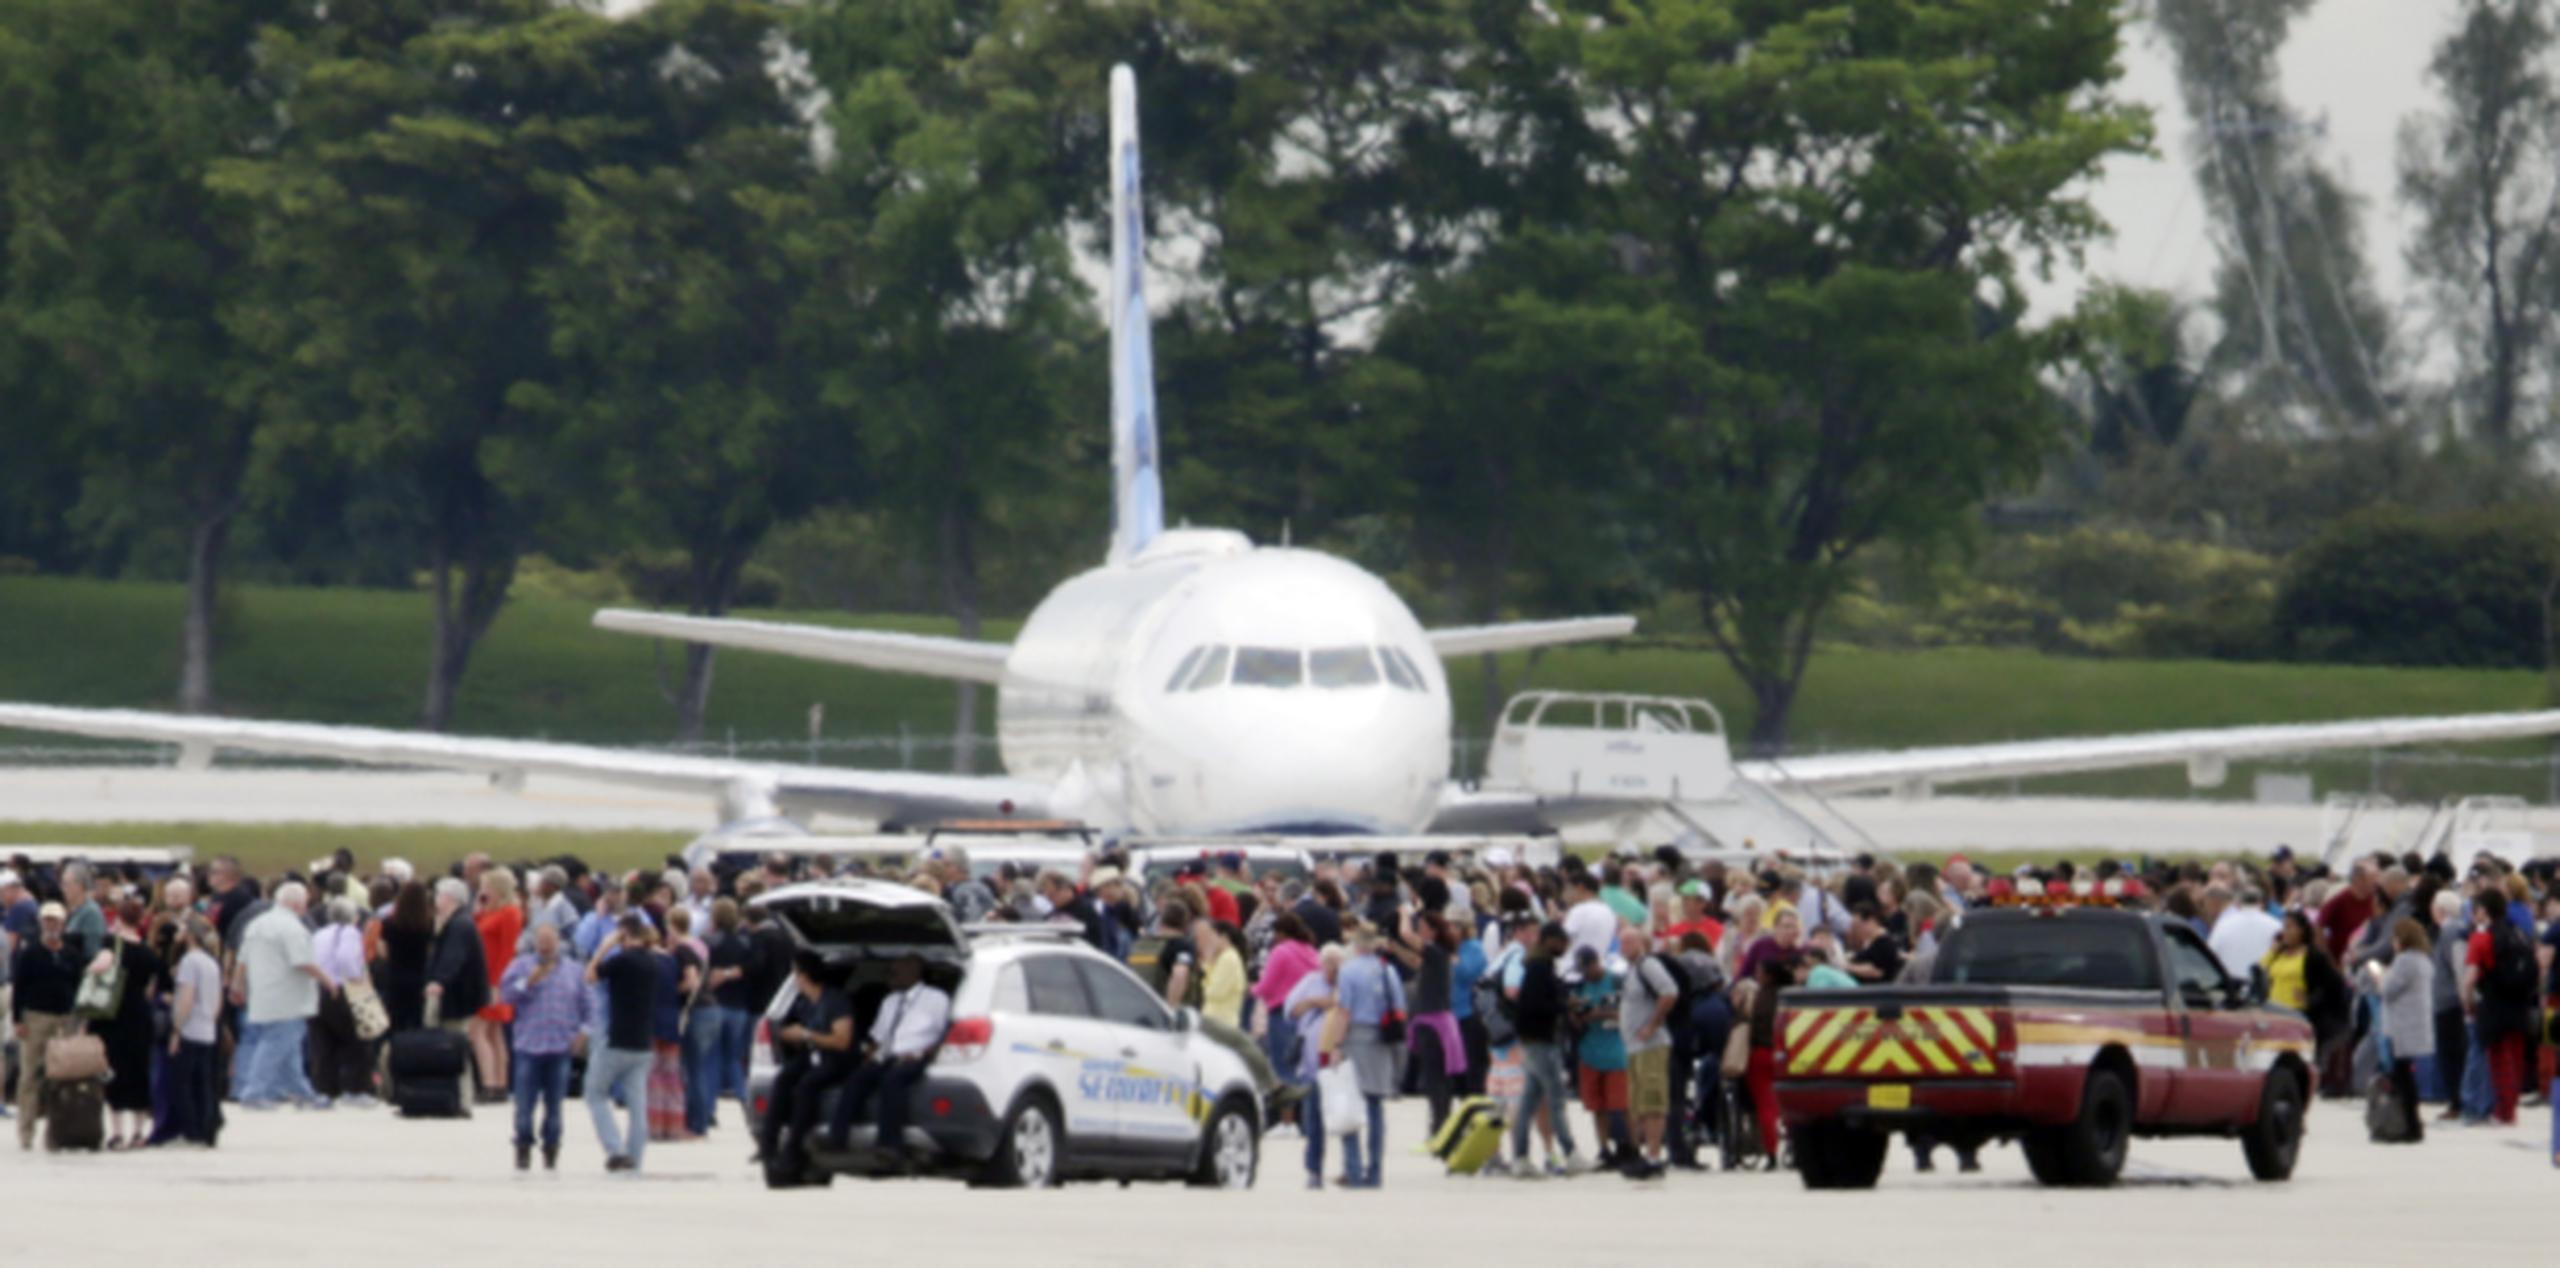 La FAA recomendó a los pasajeros que tengan hoy como destino el aeropuerto de Fort Lauderdele que consulten con sus aerolíneas sobre la situación de sus vuelos. (Prensa Asociada)